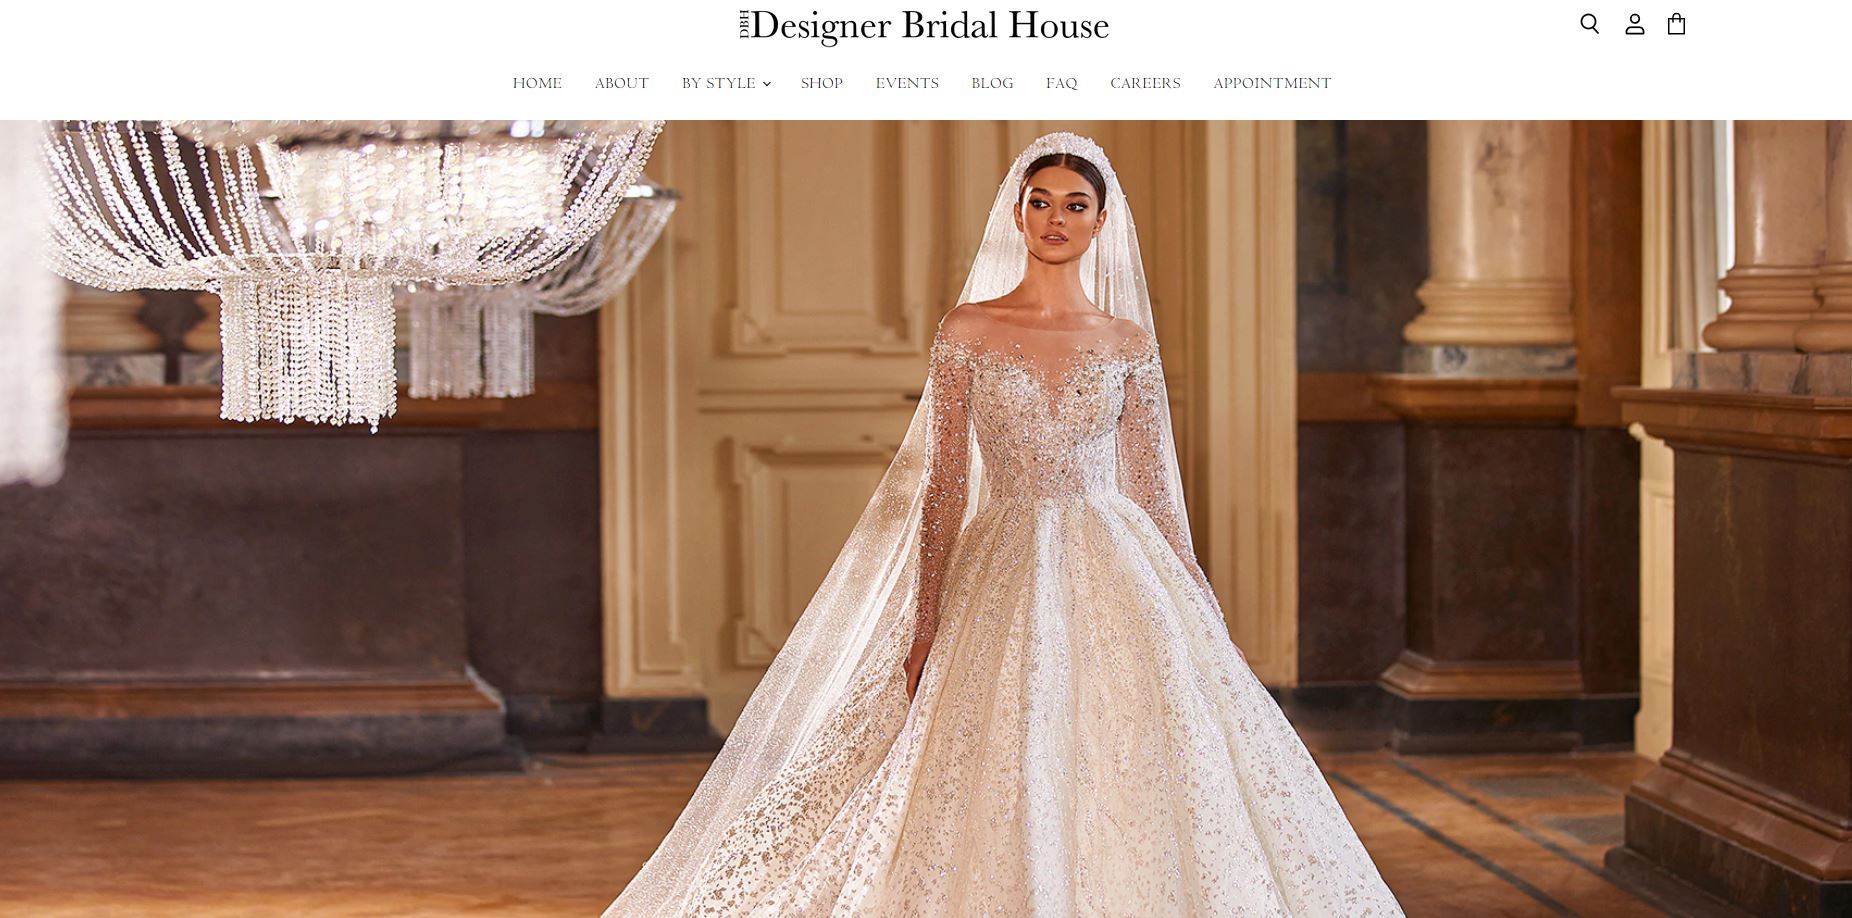 Designer Bridal House Affordable Wedding Dress Shops Melbourne